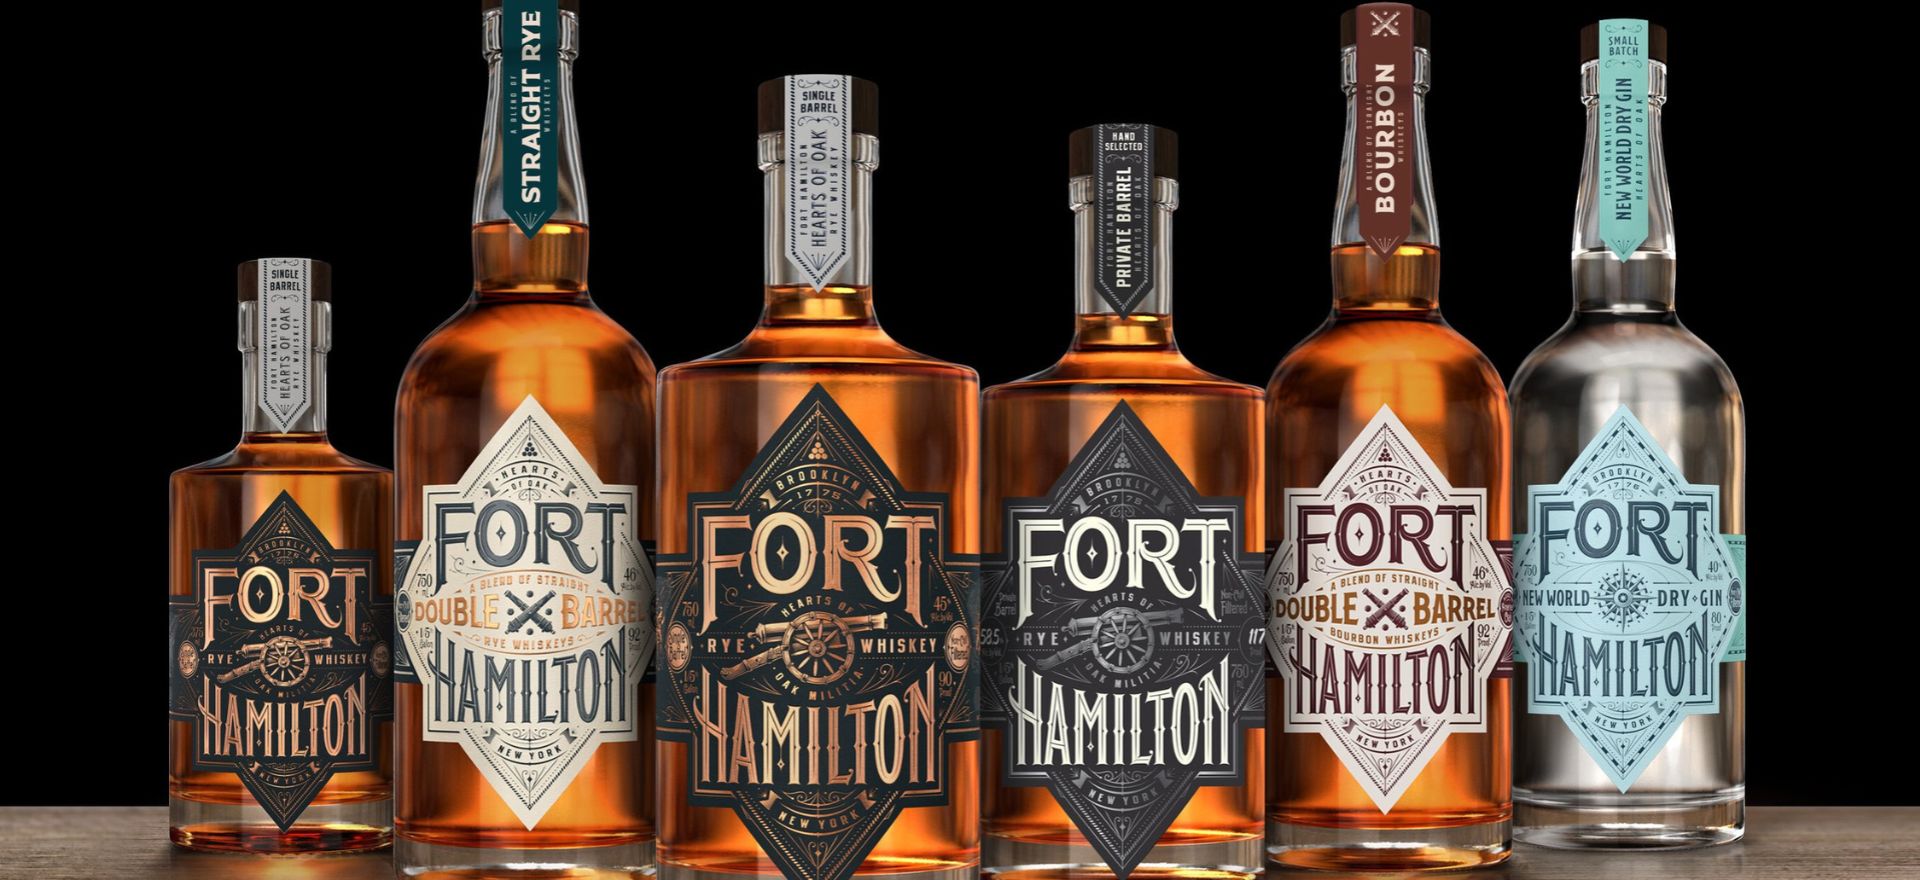 Fort Hamilton Distillery Tasting